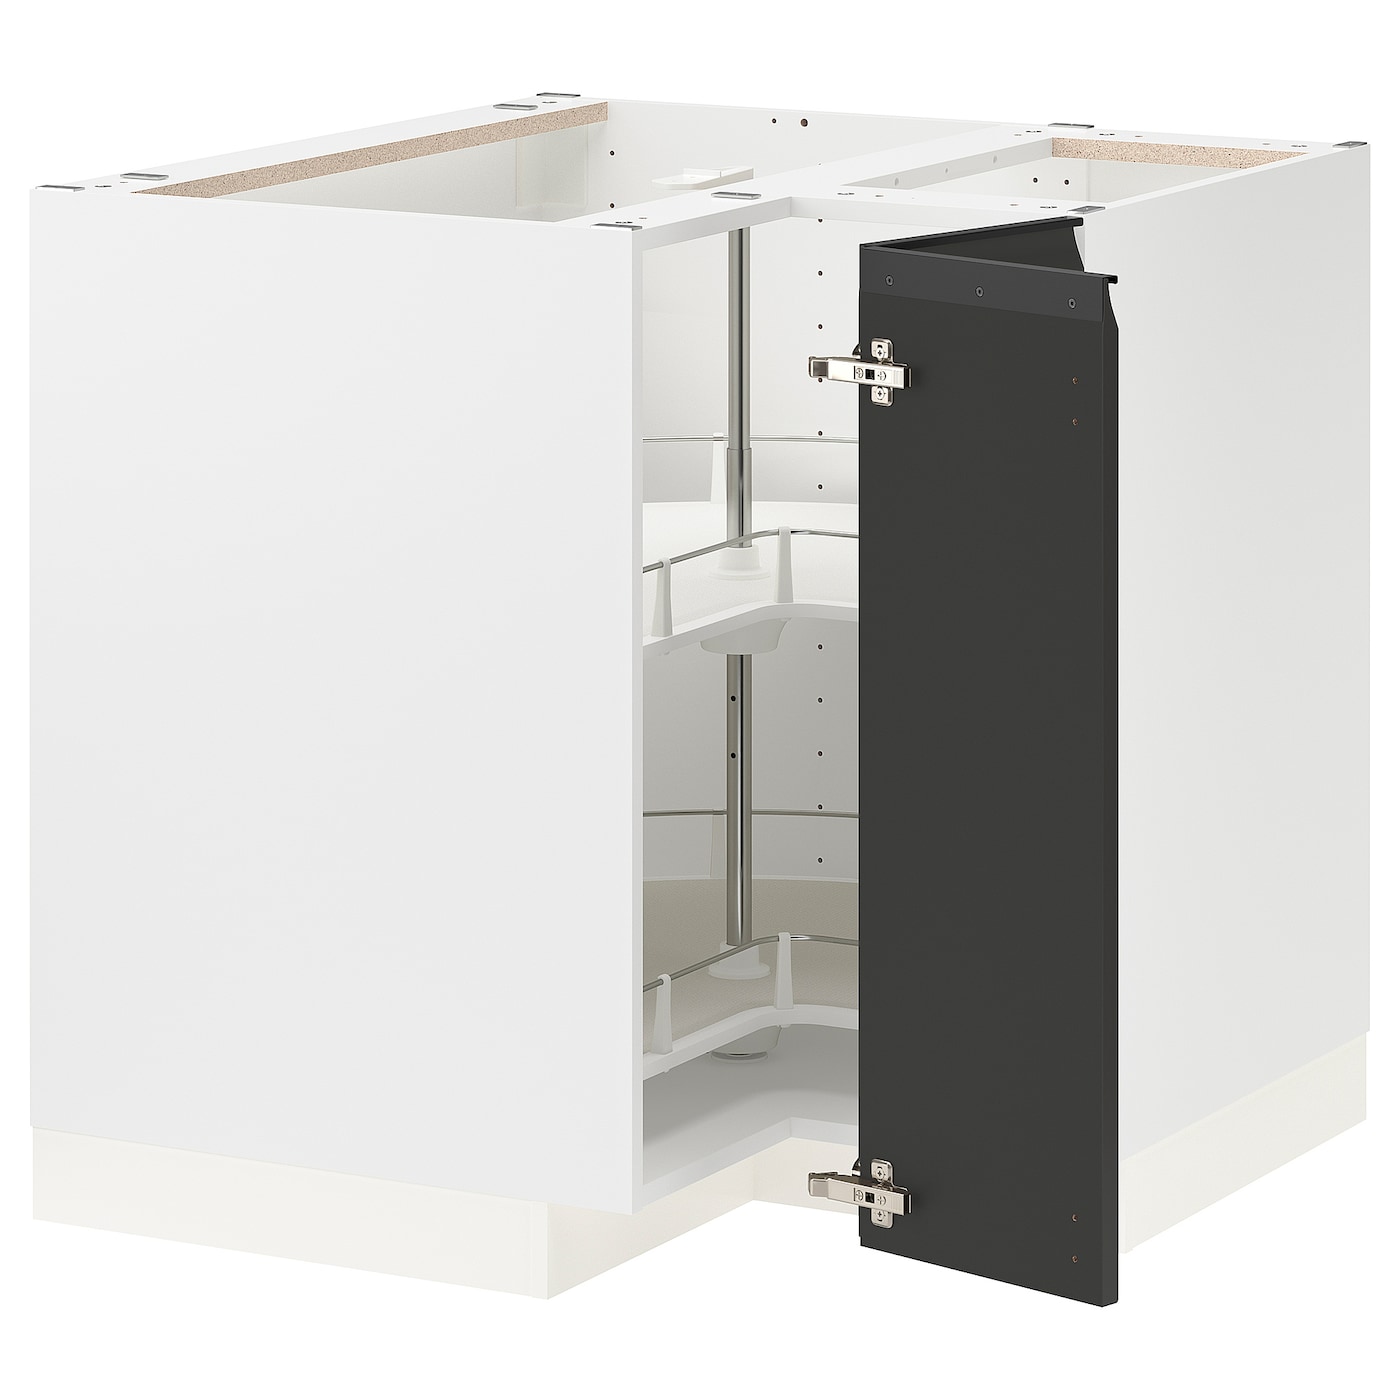 Напольный кухонный шкаф  - IKEA METOD MAXIMERA, 88x87,5x80см, ,белый/черный, МЕТОД МАКСИМЕРА ИКЕА